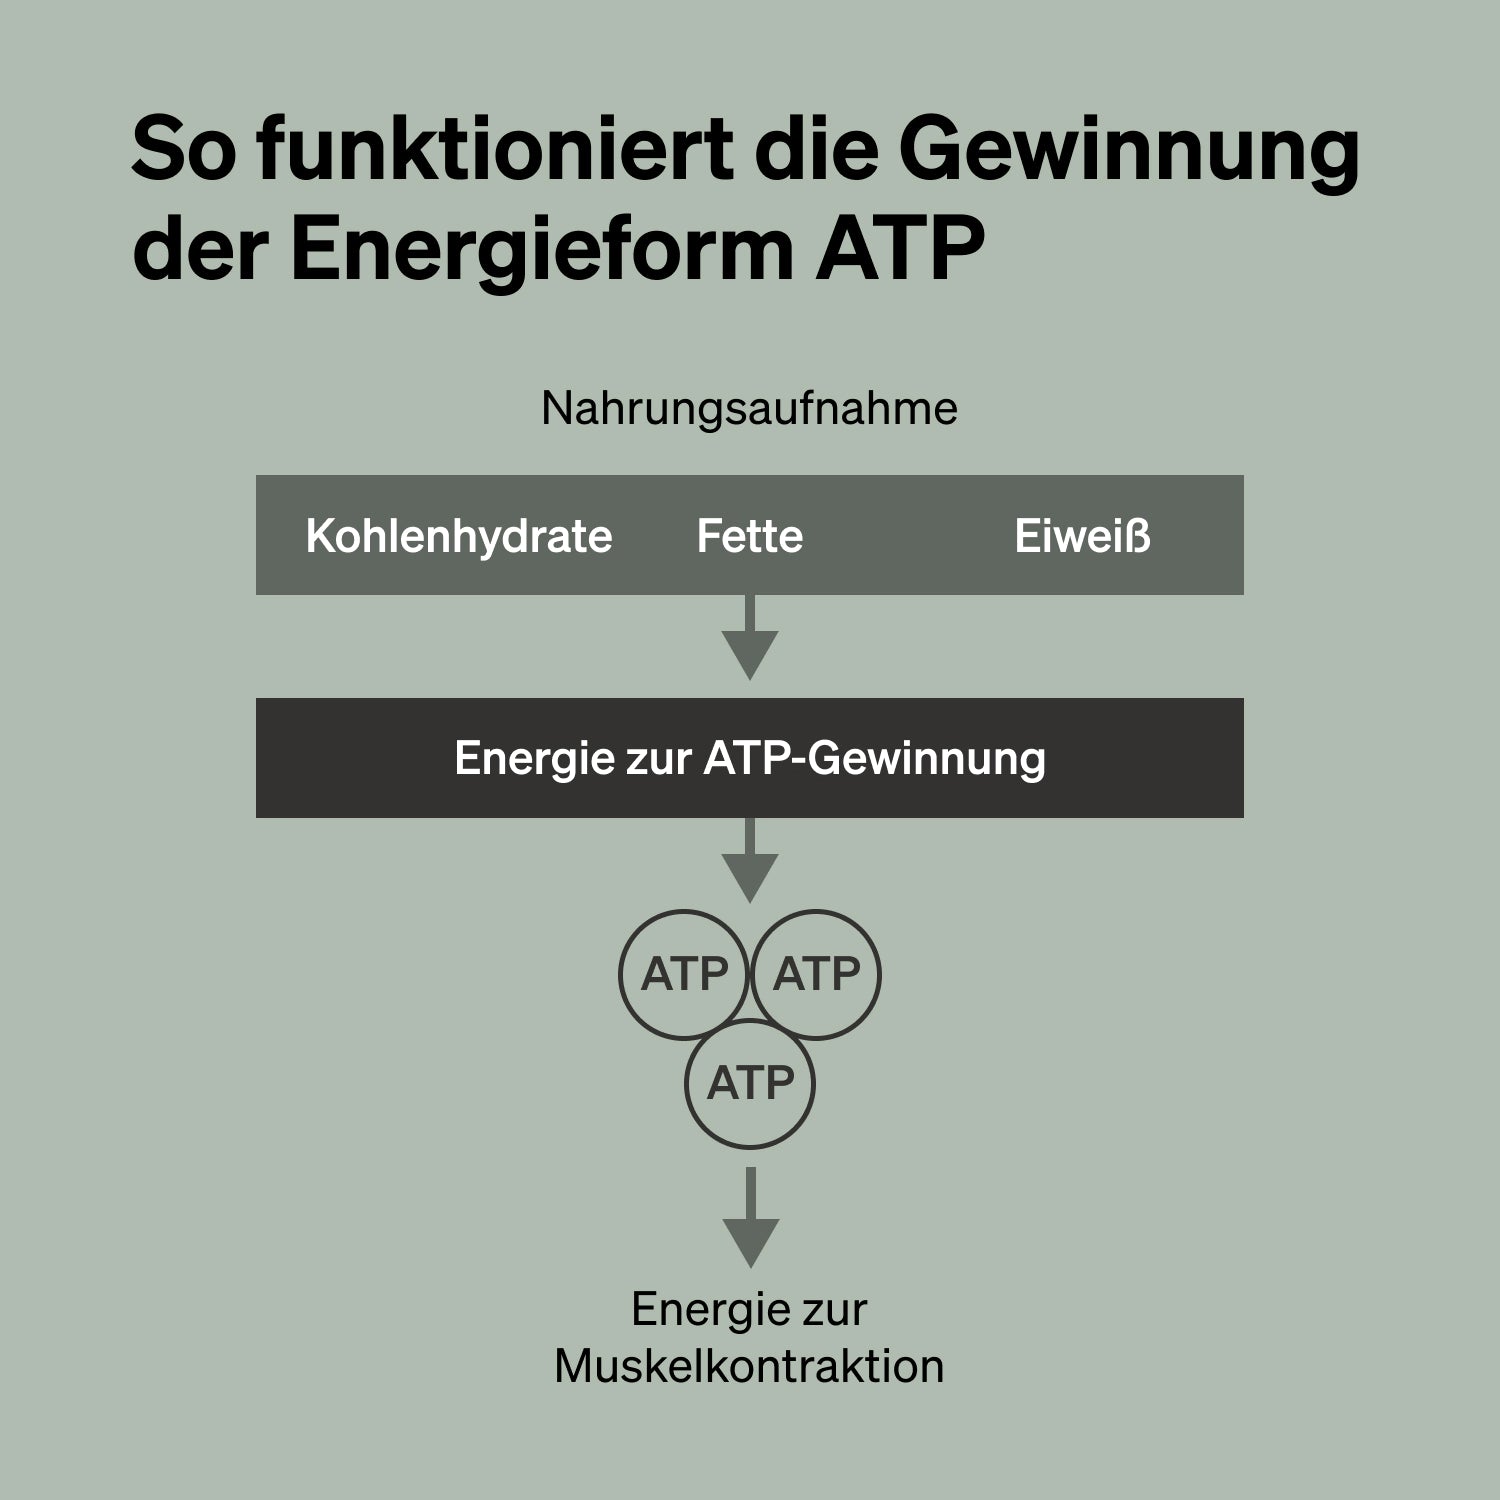 So funktioniert die Gewinnung der Energieform ATP